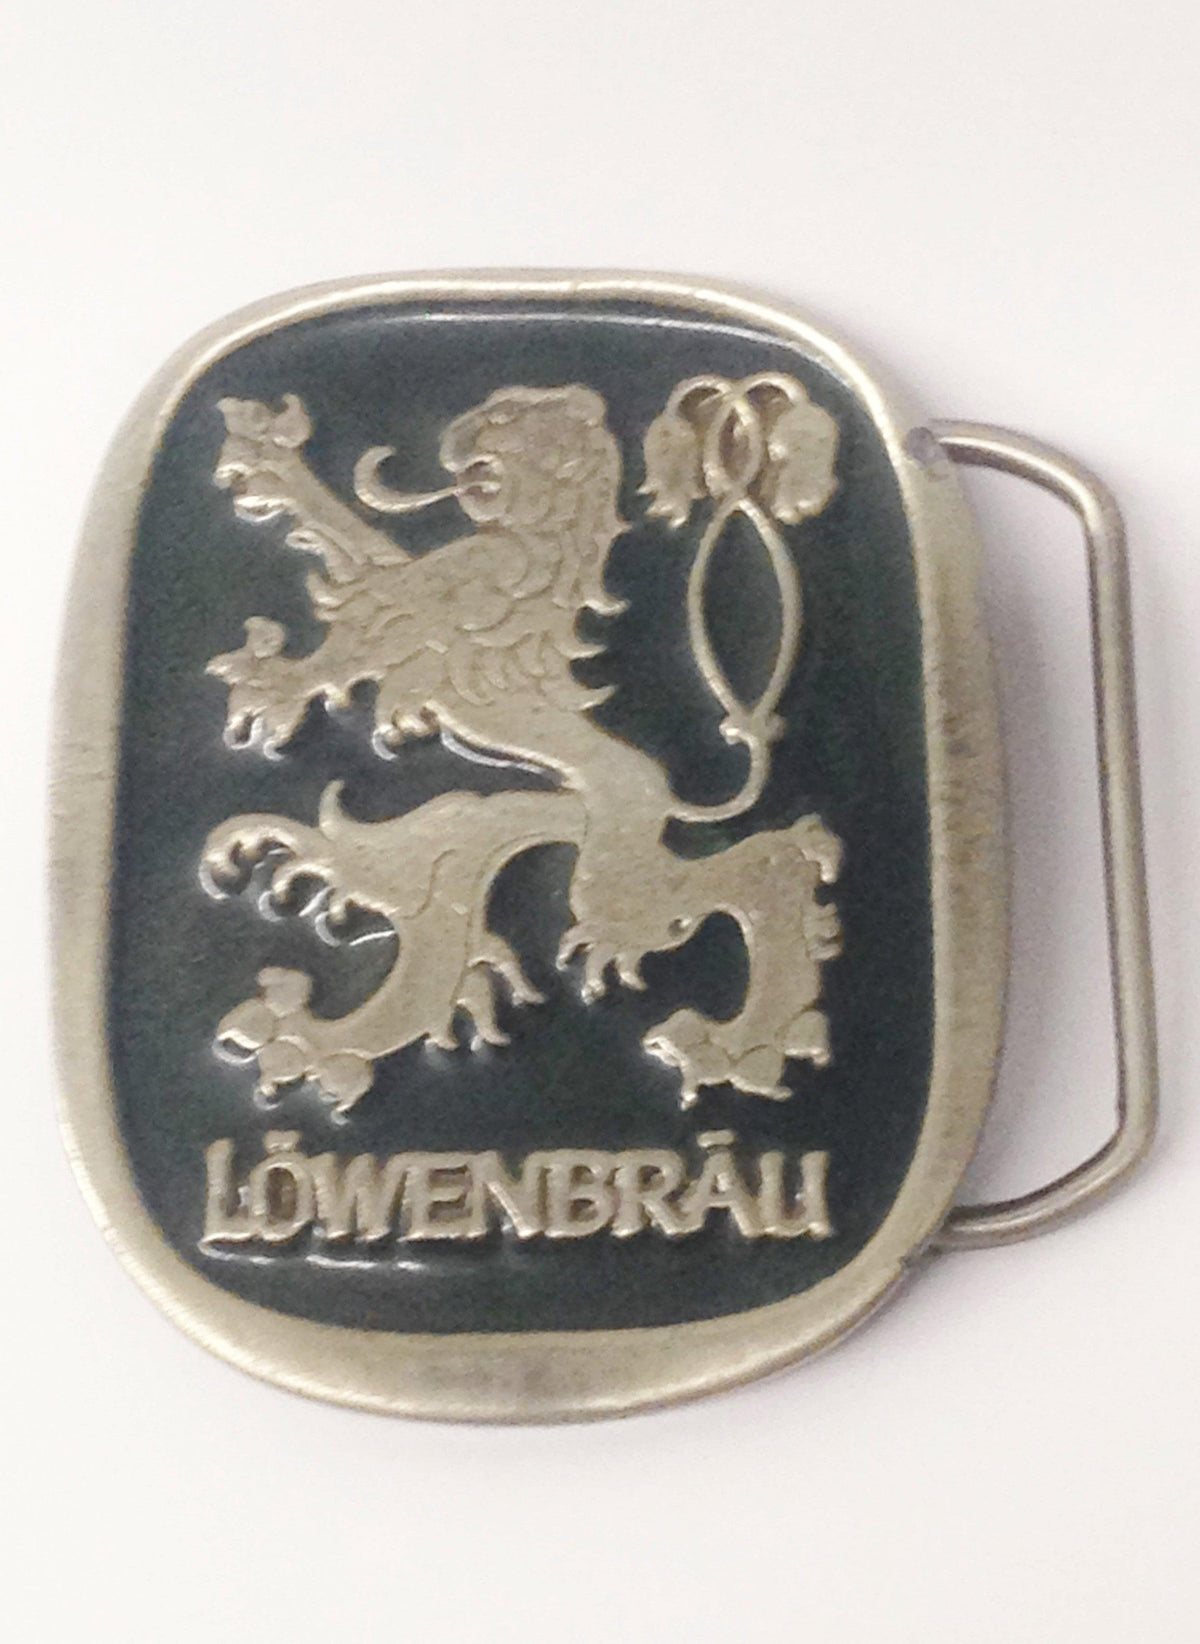 Vintage Lowenbrau Beer Advertising Belt Buckle 2094 - Hers and His Treasures